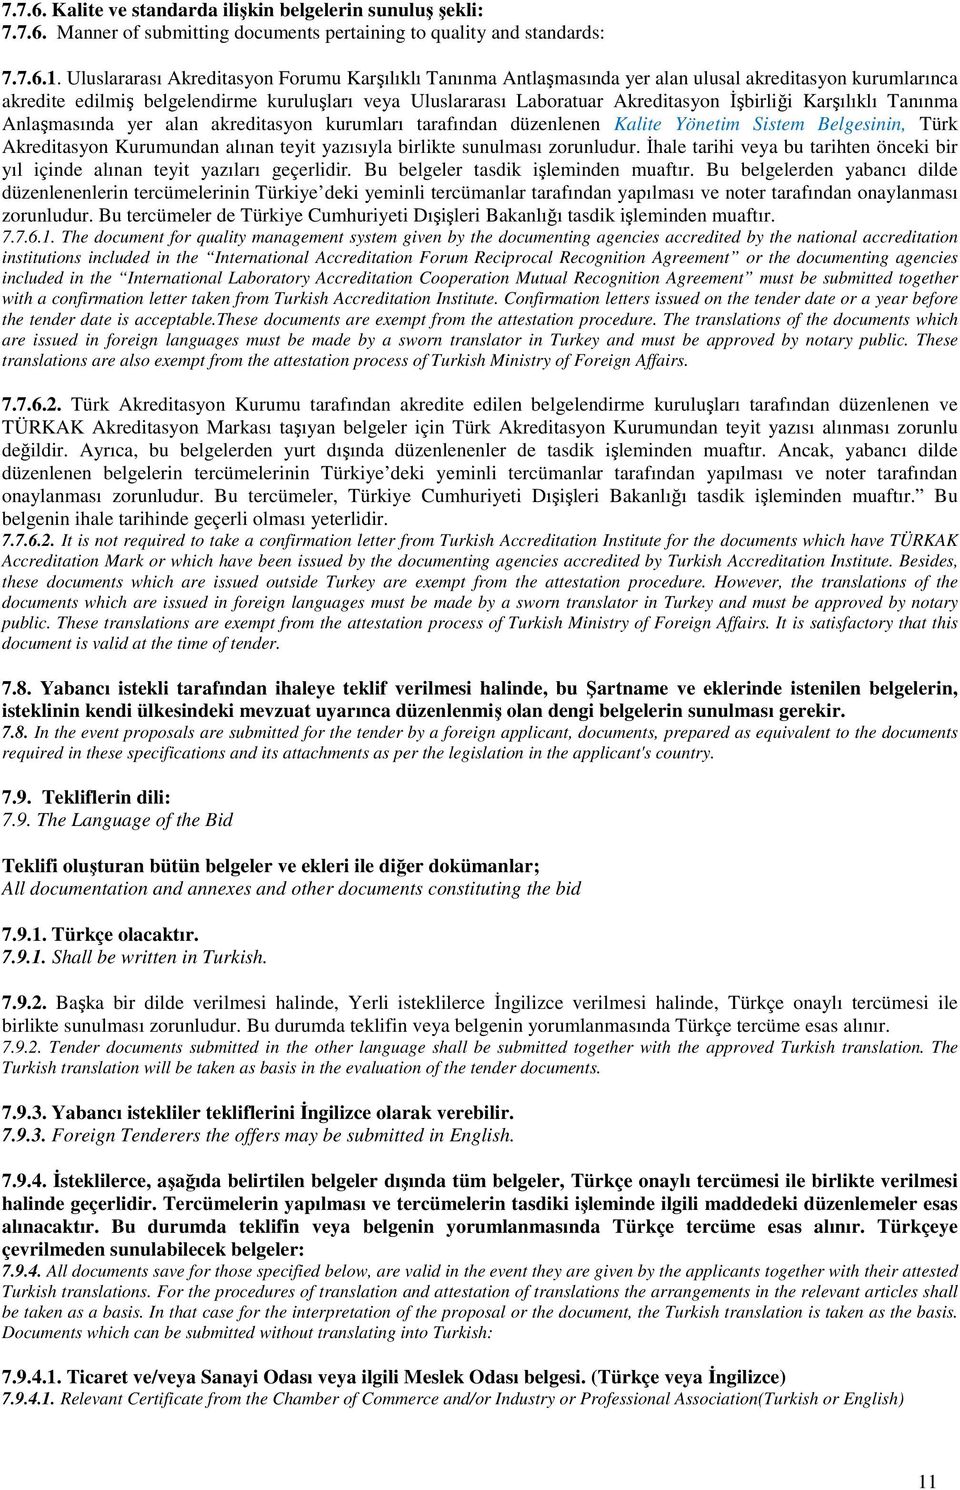 İşbirliği Karşılıklı Tanınma Anlaşmasında yer alan akreditasyon kurumları tarafından düzenlenen Kalite Yönetim Sistem Belgesinin, Türk Akreditasyon Kurumundan alınan teyit yazısıyla birlikte